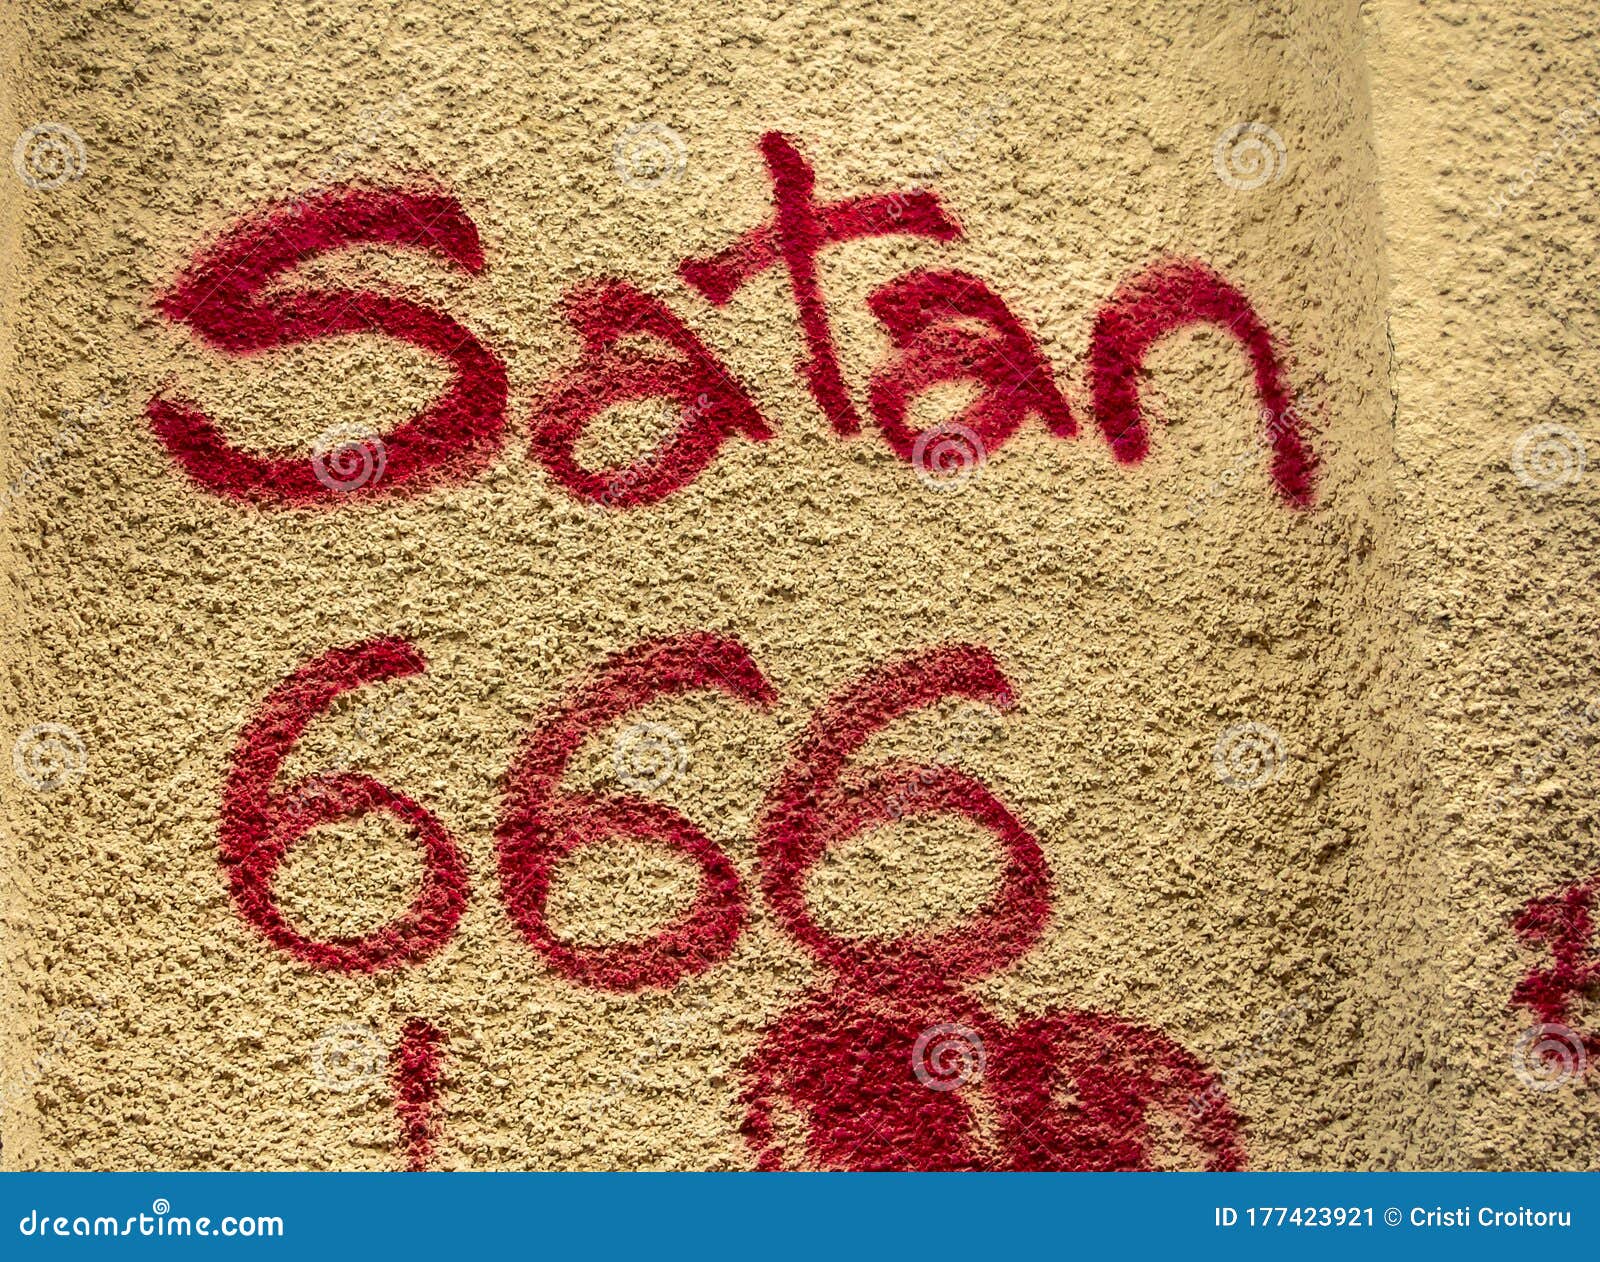 Graffiti trên tường. Satan 666 Viết bằng sơn đỏ trên tường ... | Font 666: Graffiti trên tường với chữ Satan 666 được viết bằng sơn đỏ sẽ khiến cho những người yêu thích sự khác biệt và hơi phiêu lưu bị thu hút. Với Font 666, các đường chữ đầy uy lực sẽ mang đến cho các bạn những cảm xúc mạnh mẽ và sự độc đáo của sản phẩm. Dù bạn là ai, hãy cùng trải nghiệm những bức chân dung thiết kế độc đáo này.